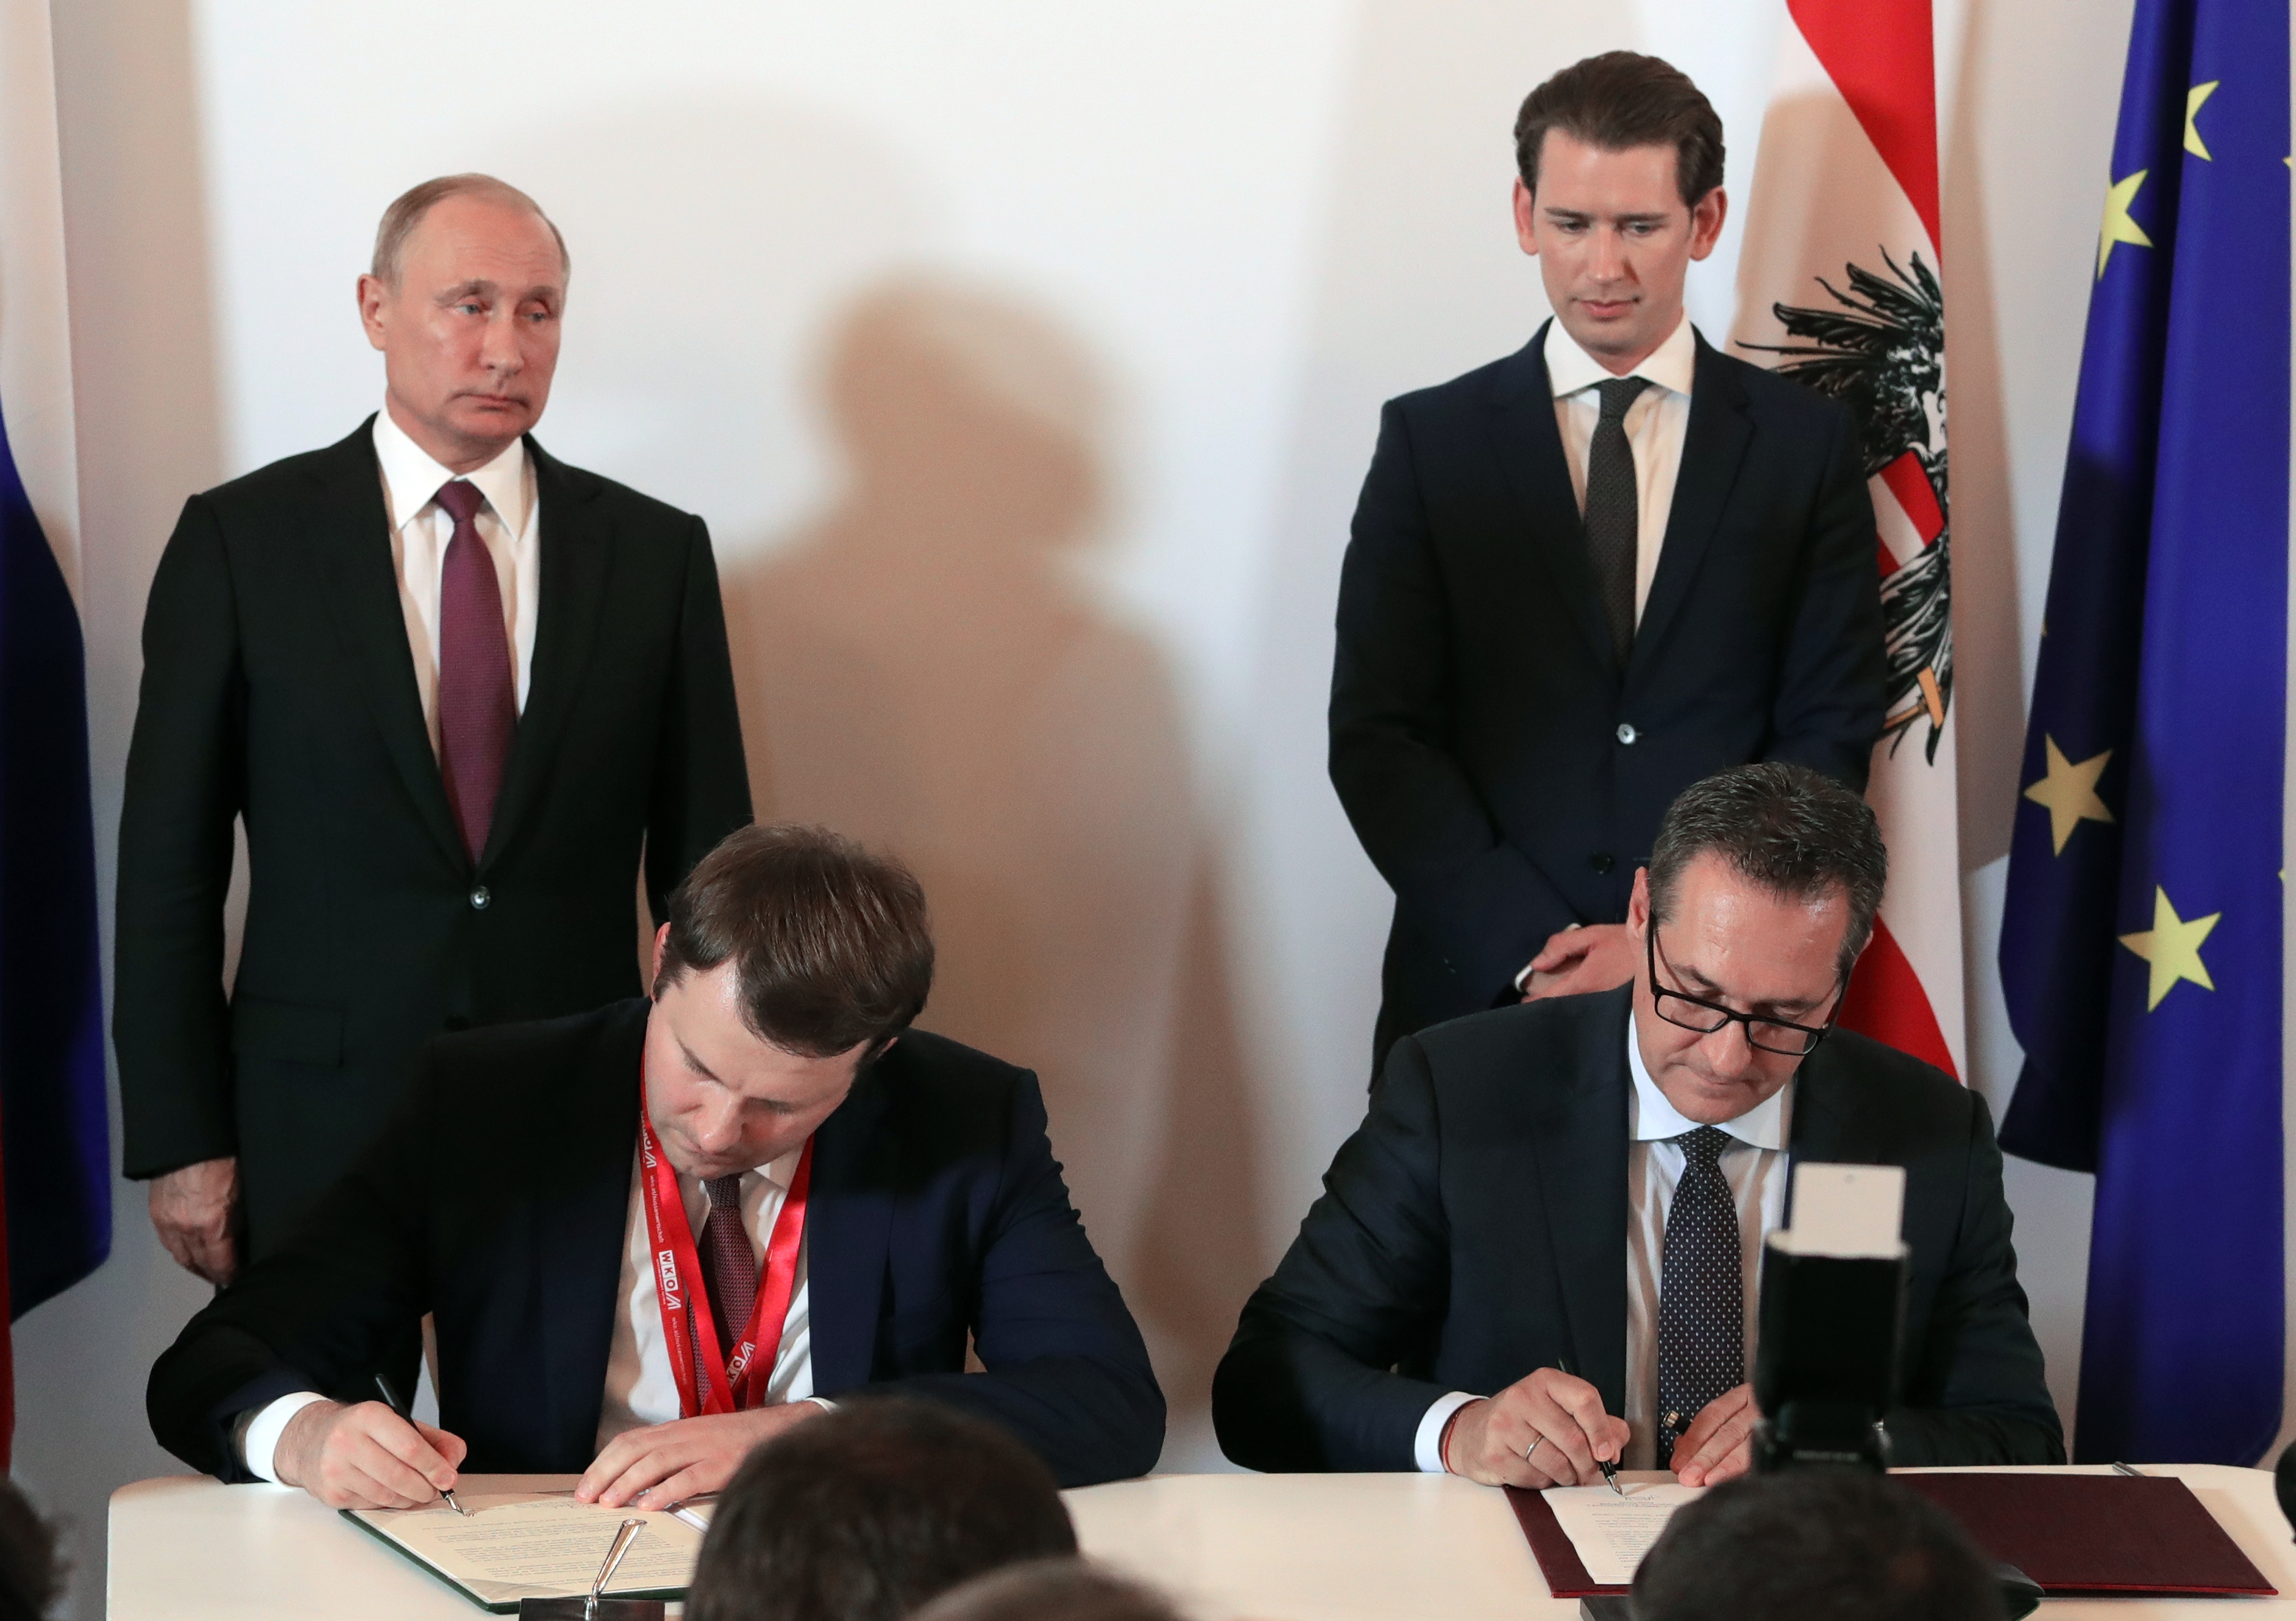 Putyin elnök és Kurz kancellár nézi, ahogy Strache alkancellár aláír, 2018